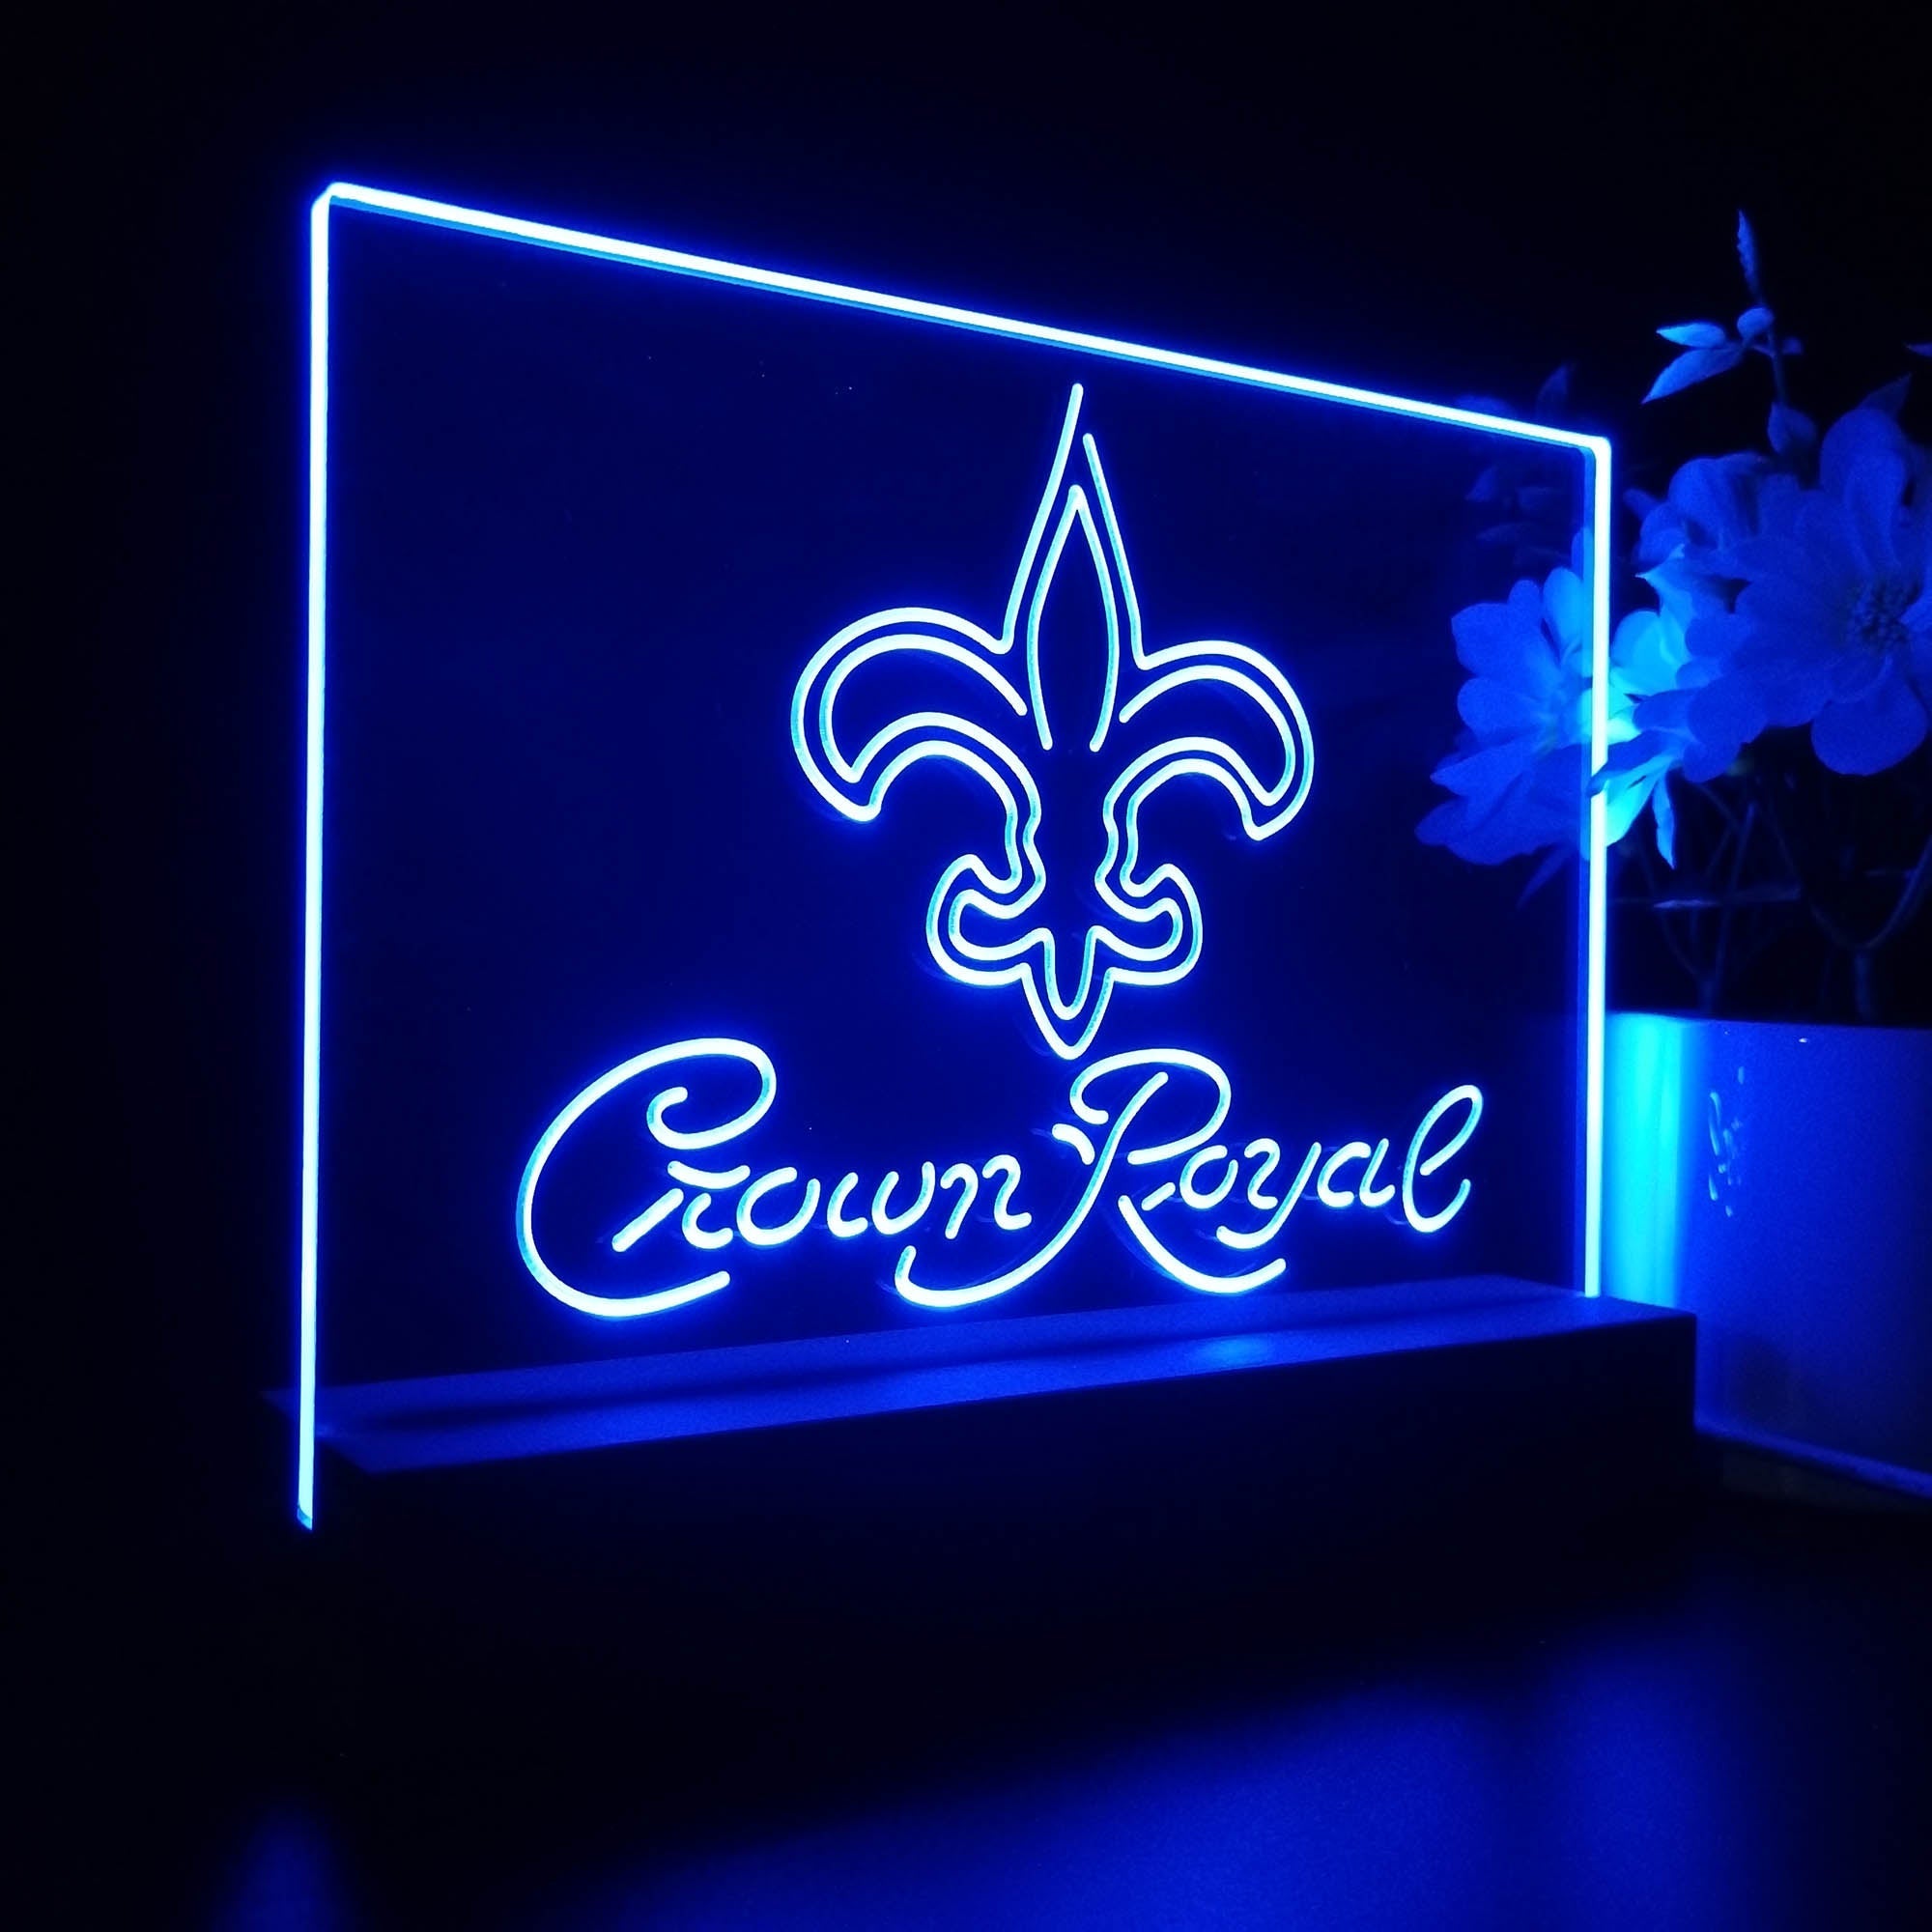 Crown Royal Bar New Orleans Saints Est. 1967 Night Light Pub Bar Lamp